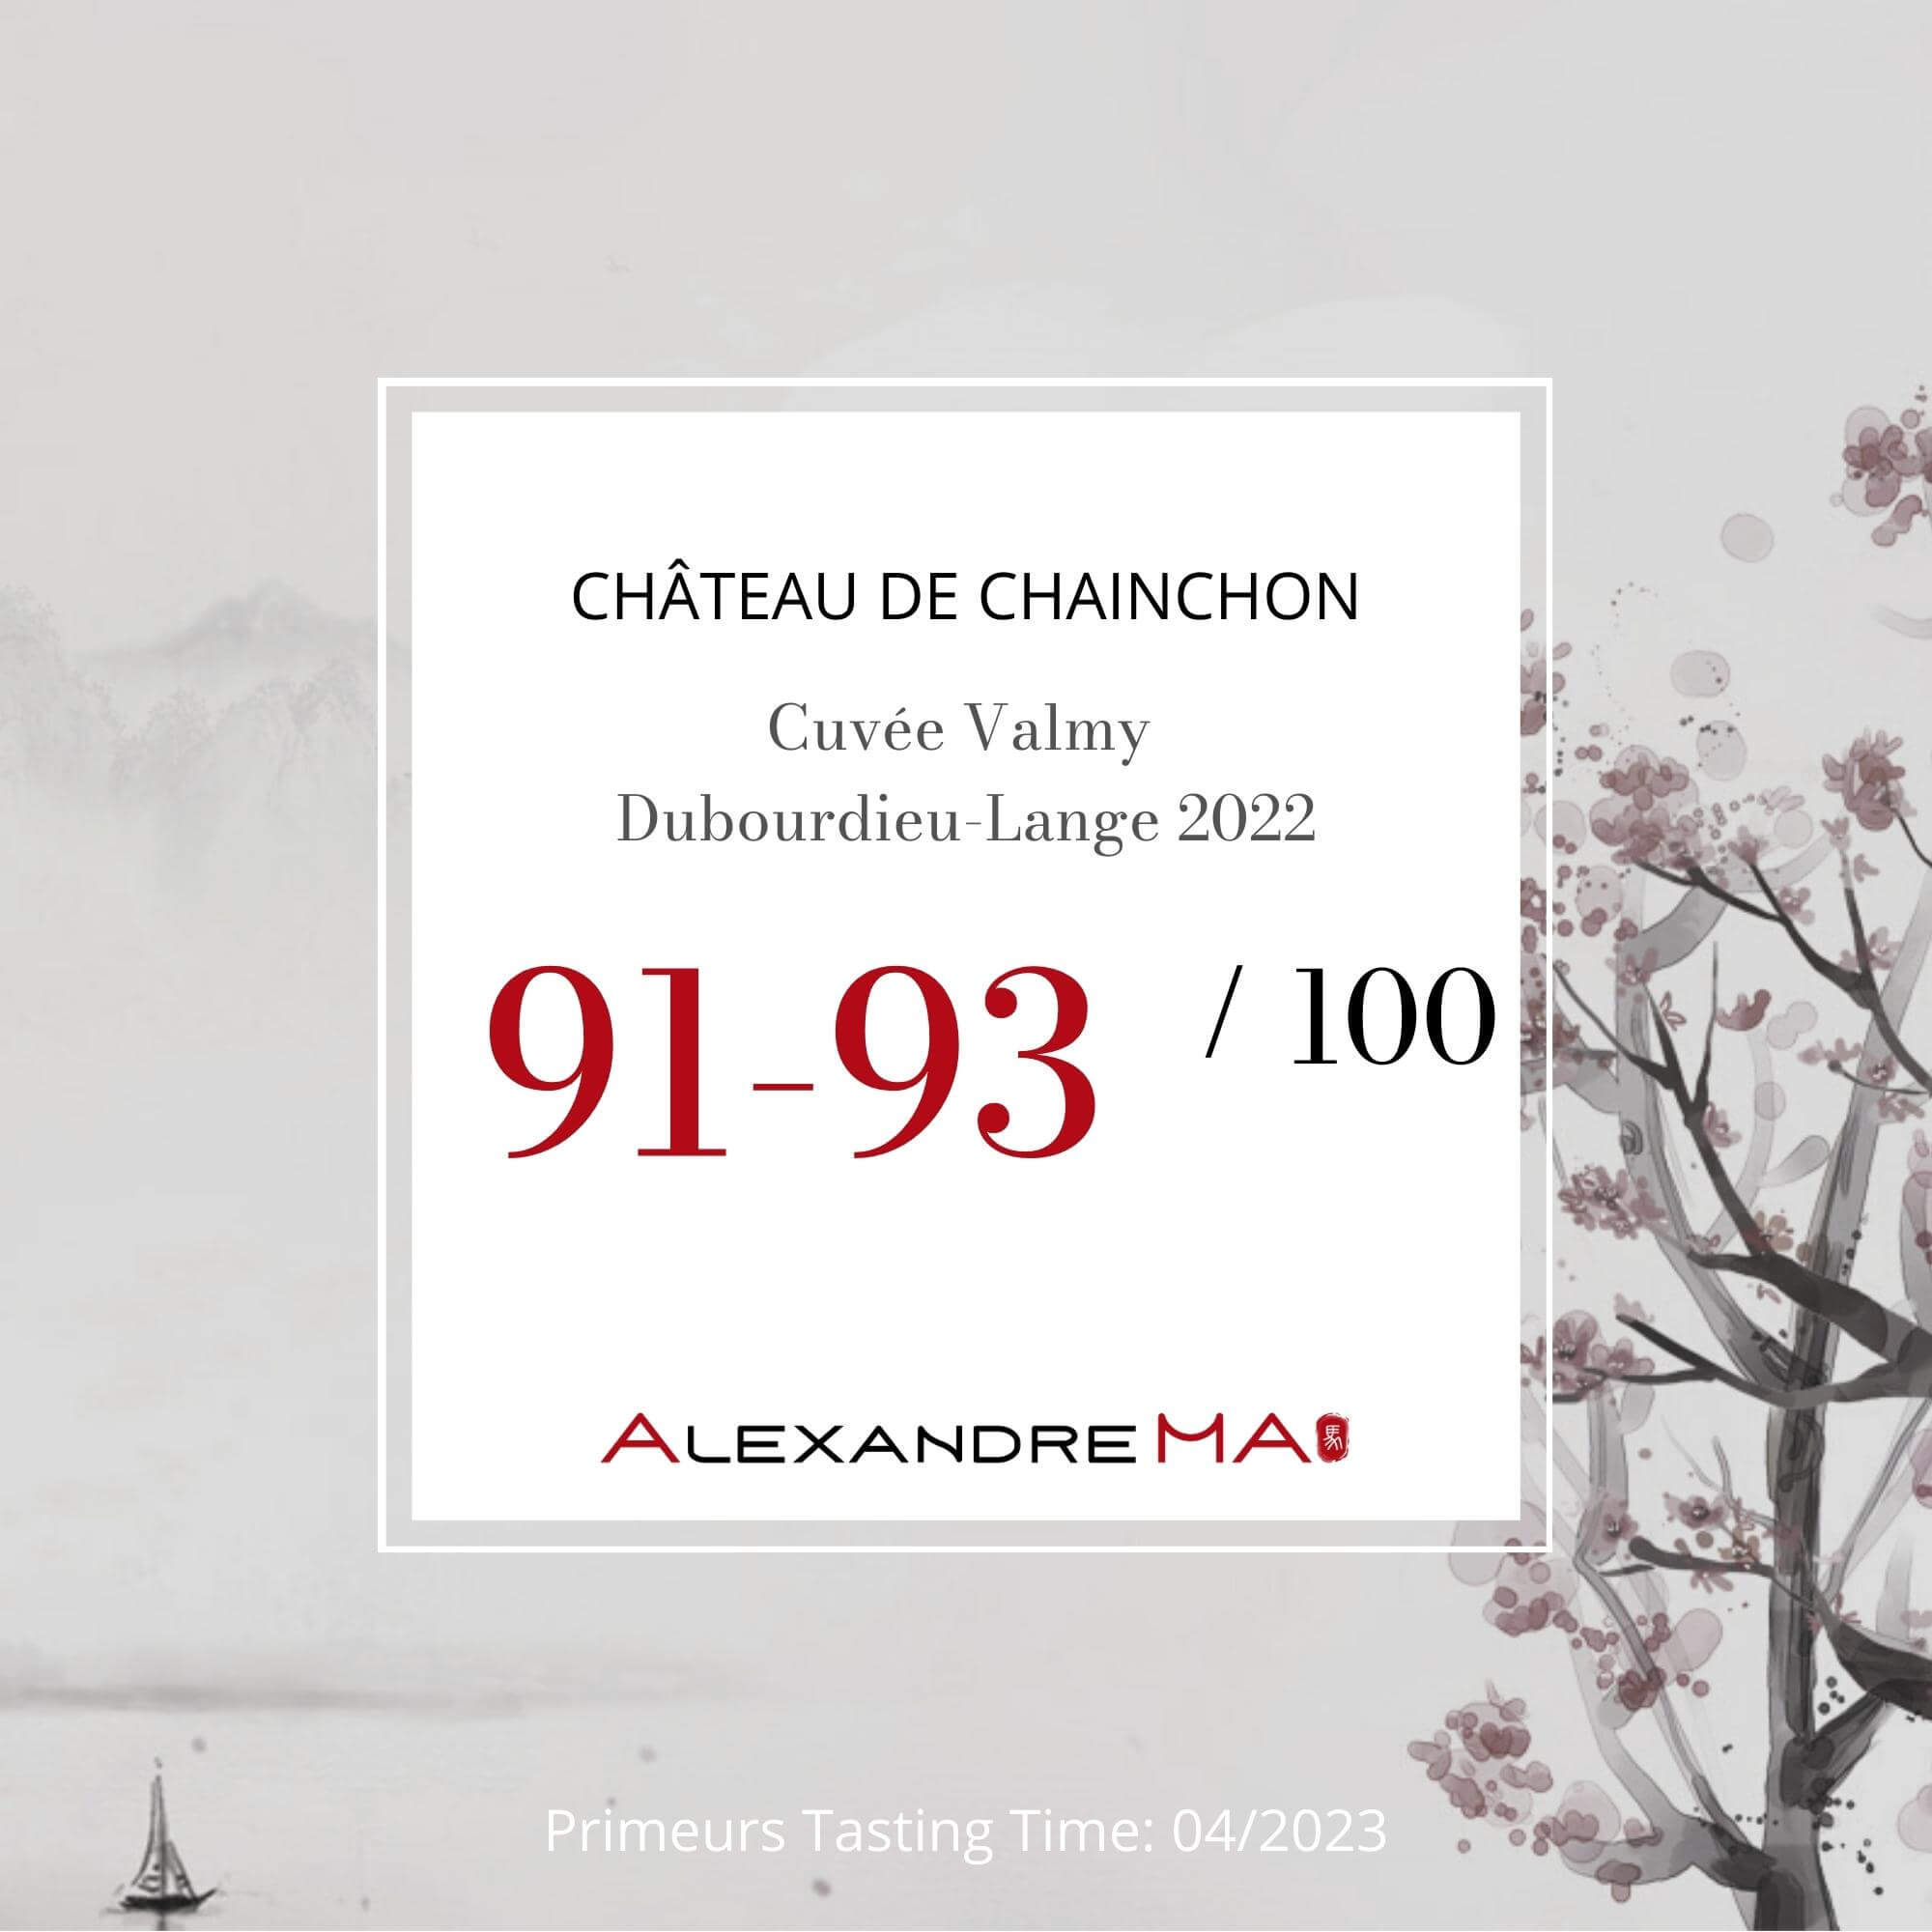 Château de Chainchon – Cuvée Valmy Dubourdieu-Lange 2022 Primeurs - Alexandre Ma